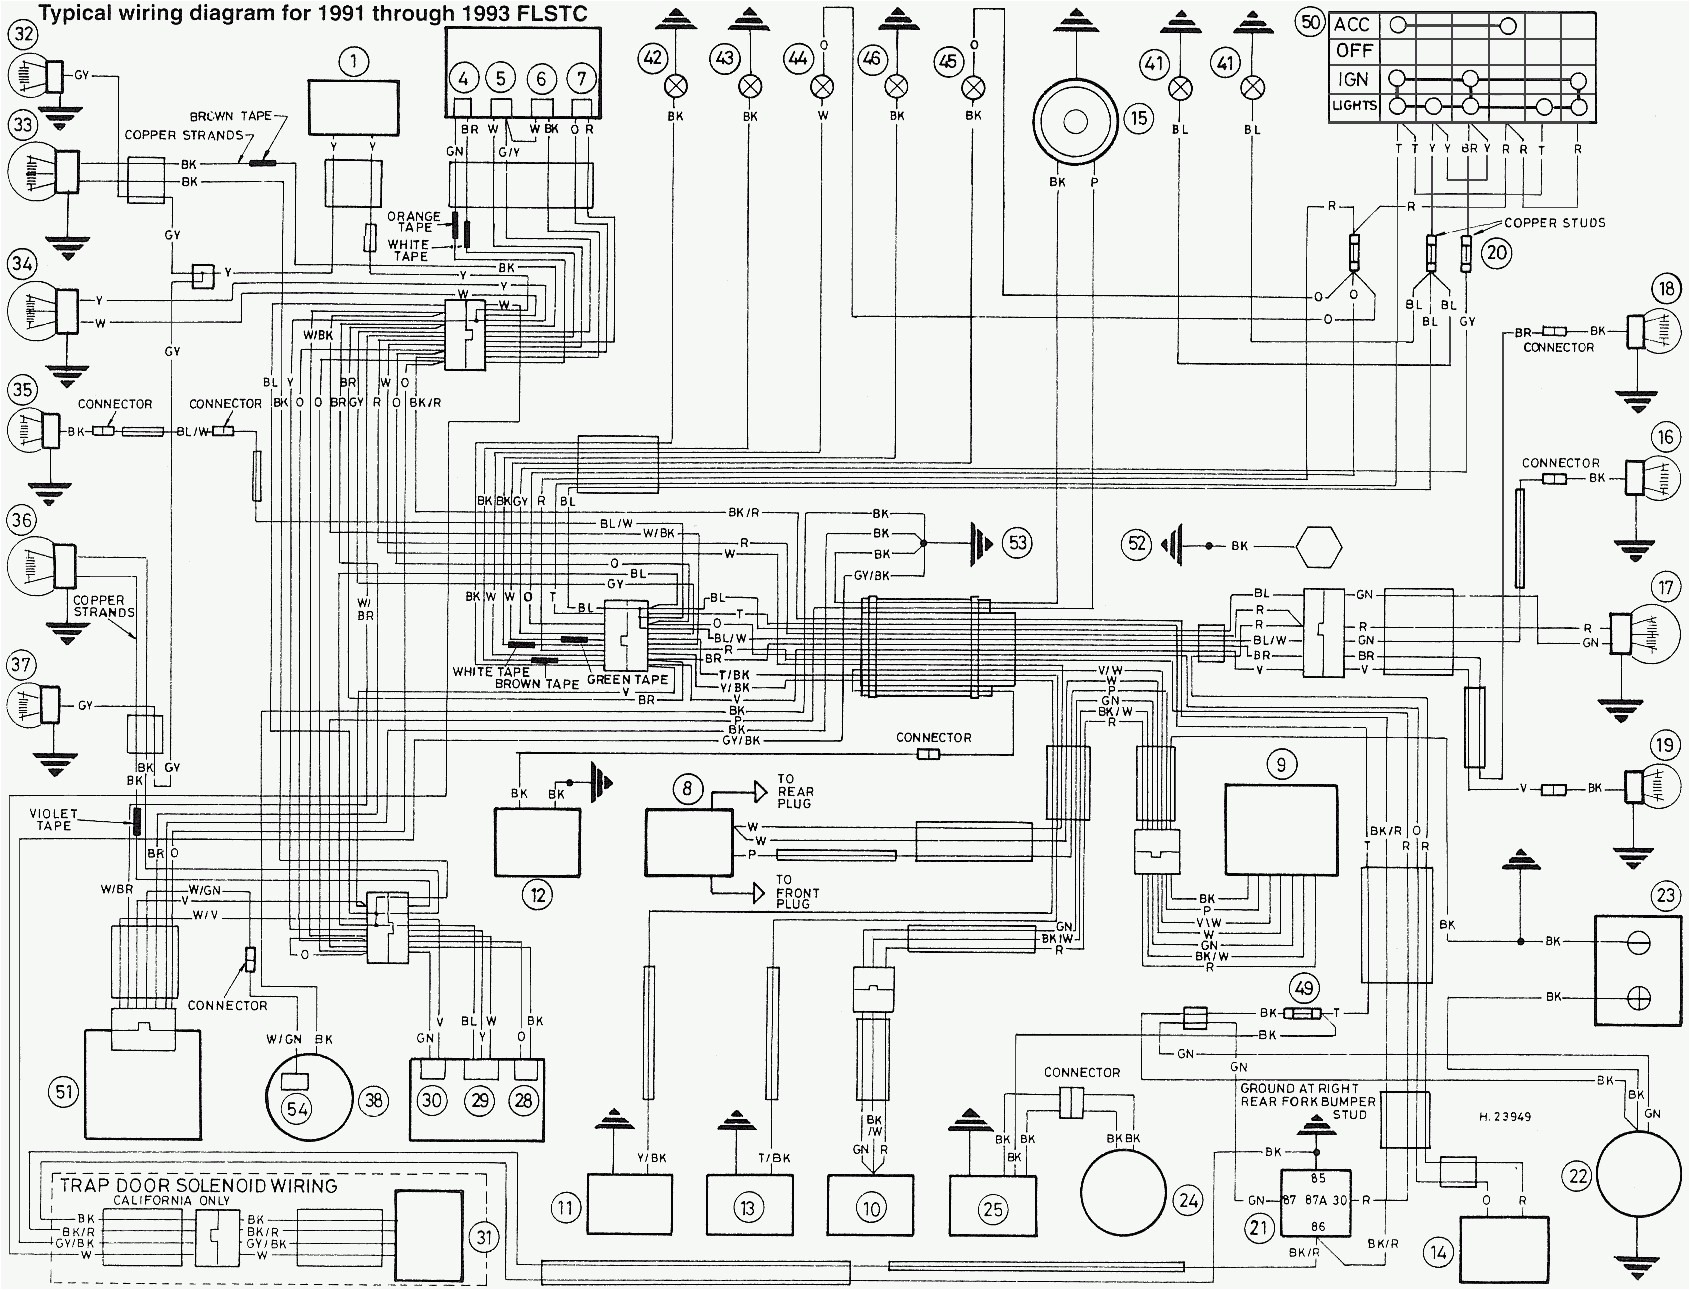 1997 dyna wiring diagram wiring diagram mix 1997 dyna wiring diagram